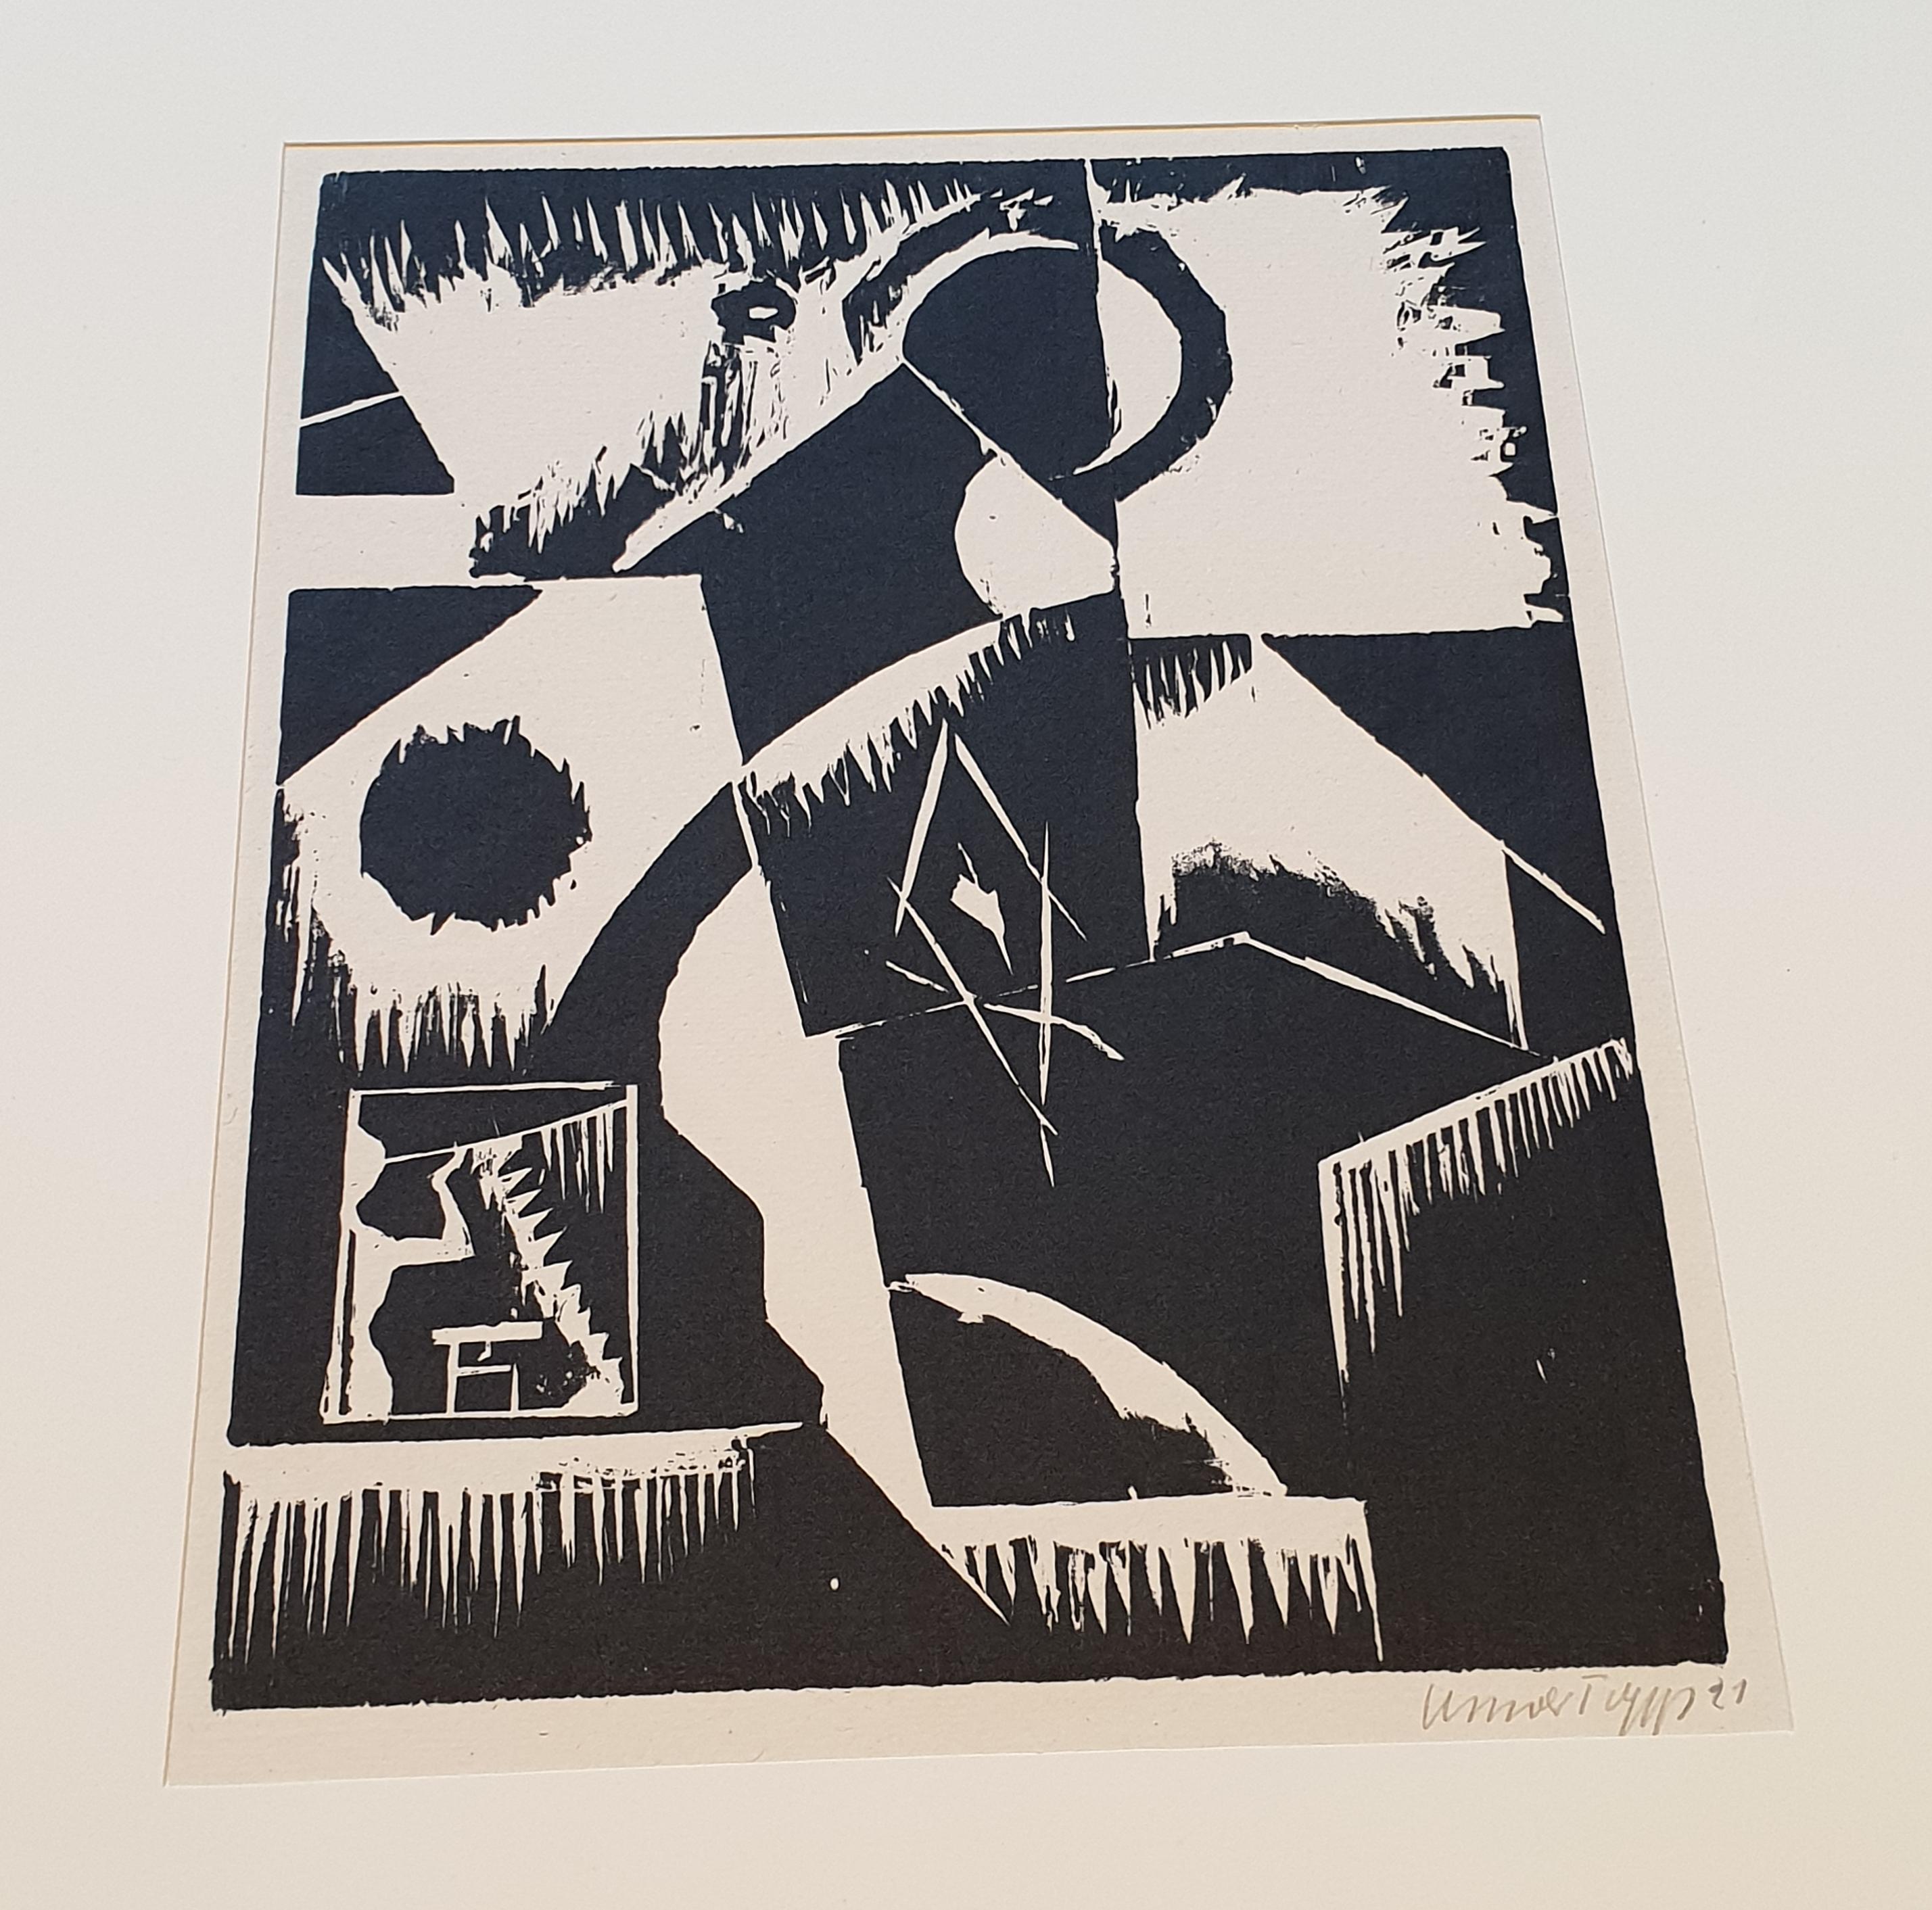 Le Bauhaus « Neuf europische Graphik », troisième portefeuille d'artistes allemands en vente 16